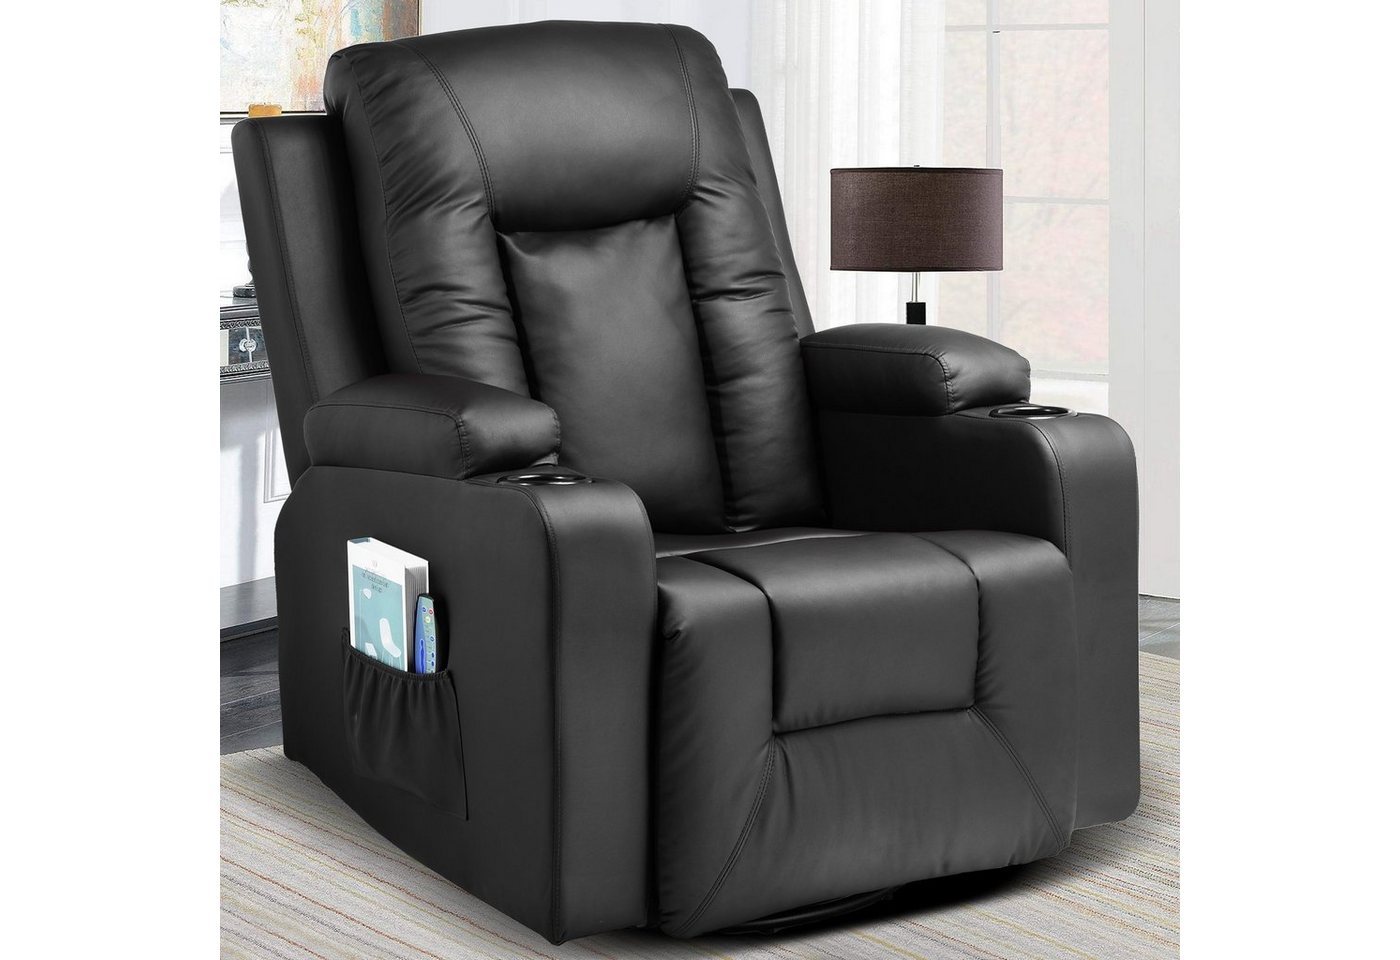 COMHOMA Relaxsessel TV Sessel mit Massage/Wippfun-und Wärmefunktion Heizung-Rückenlehne, mit 2 Seitentaschen und Getränkehalter von COMHOMA